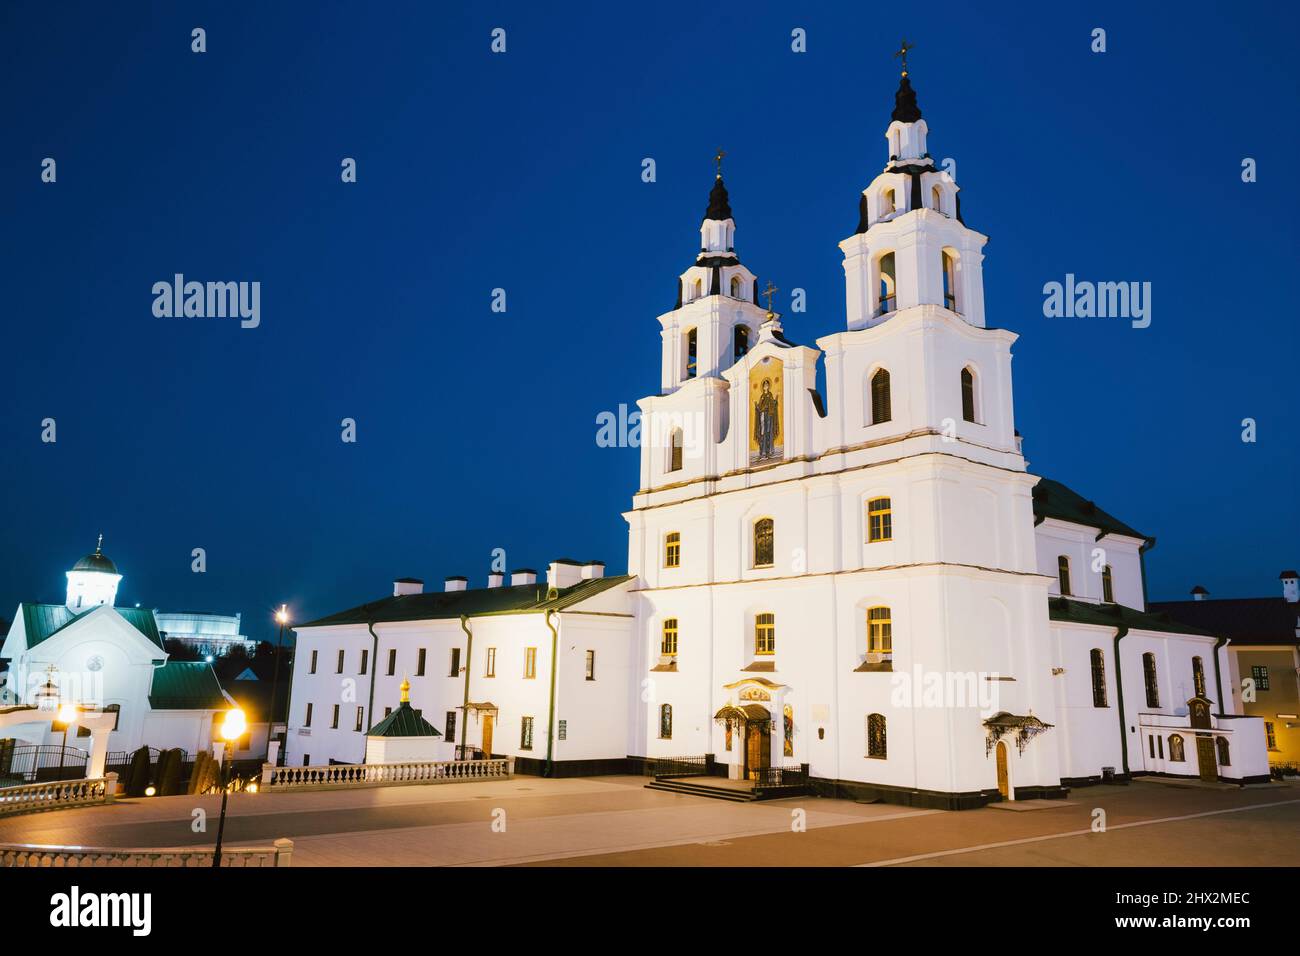 Die Kathedrale des Heiligen Geistes in Minsk - der Orthodoxen Kirche von Belarus und Symbol der Hauptstadt. Abend, Nacht Szene mit Weiß beleuchtete Gebäude Stockfoto